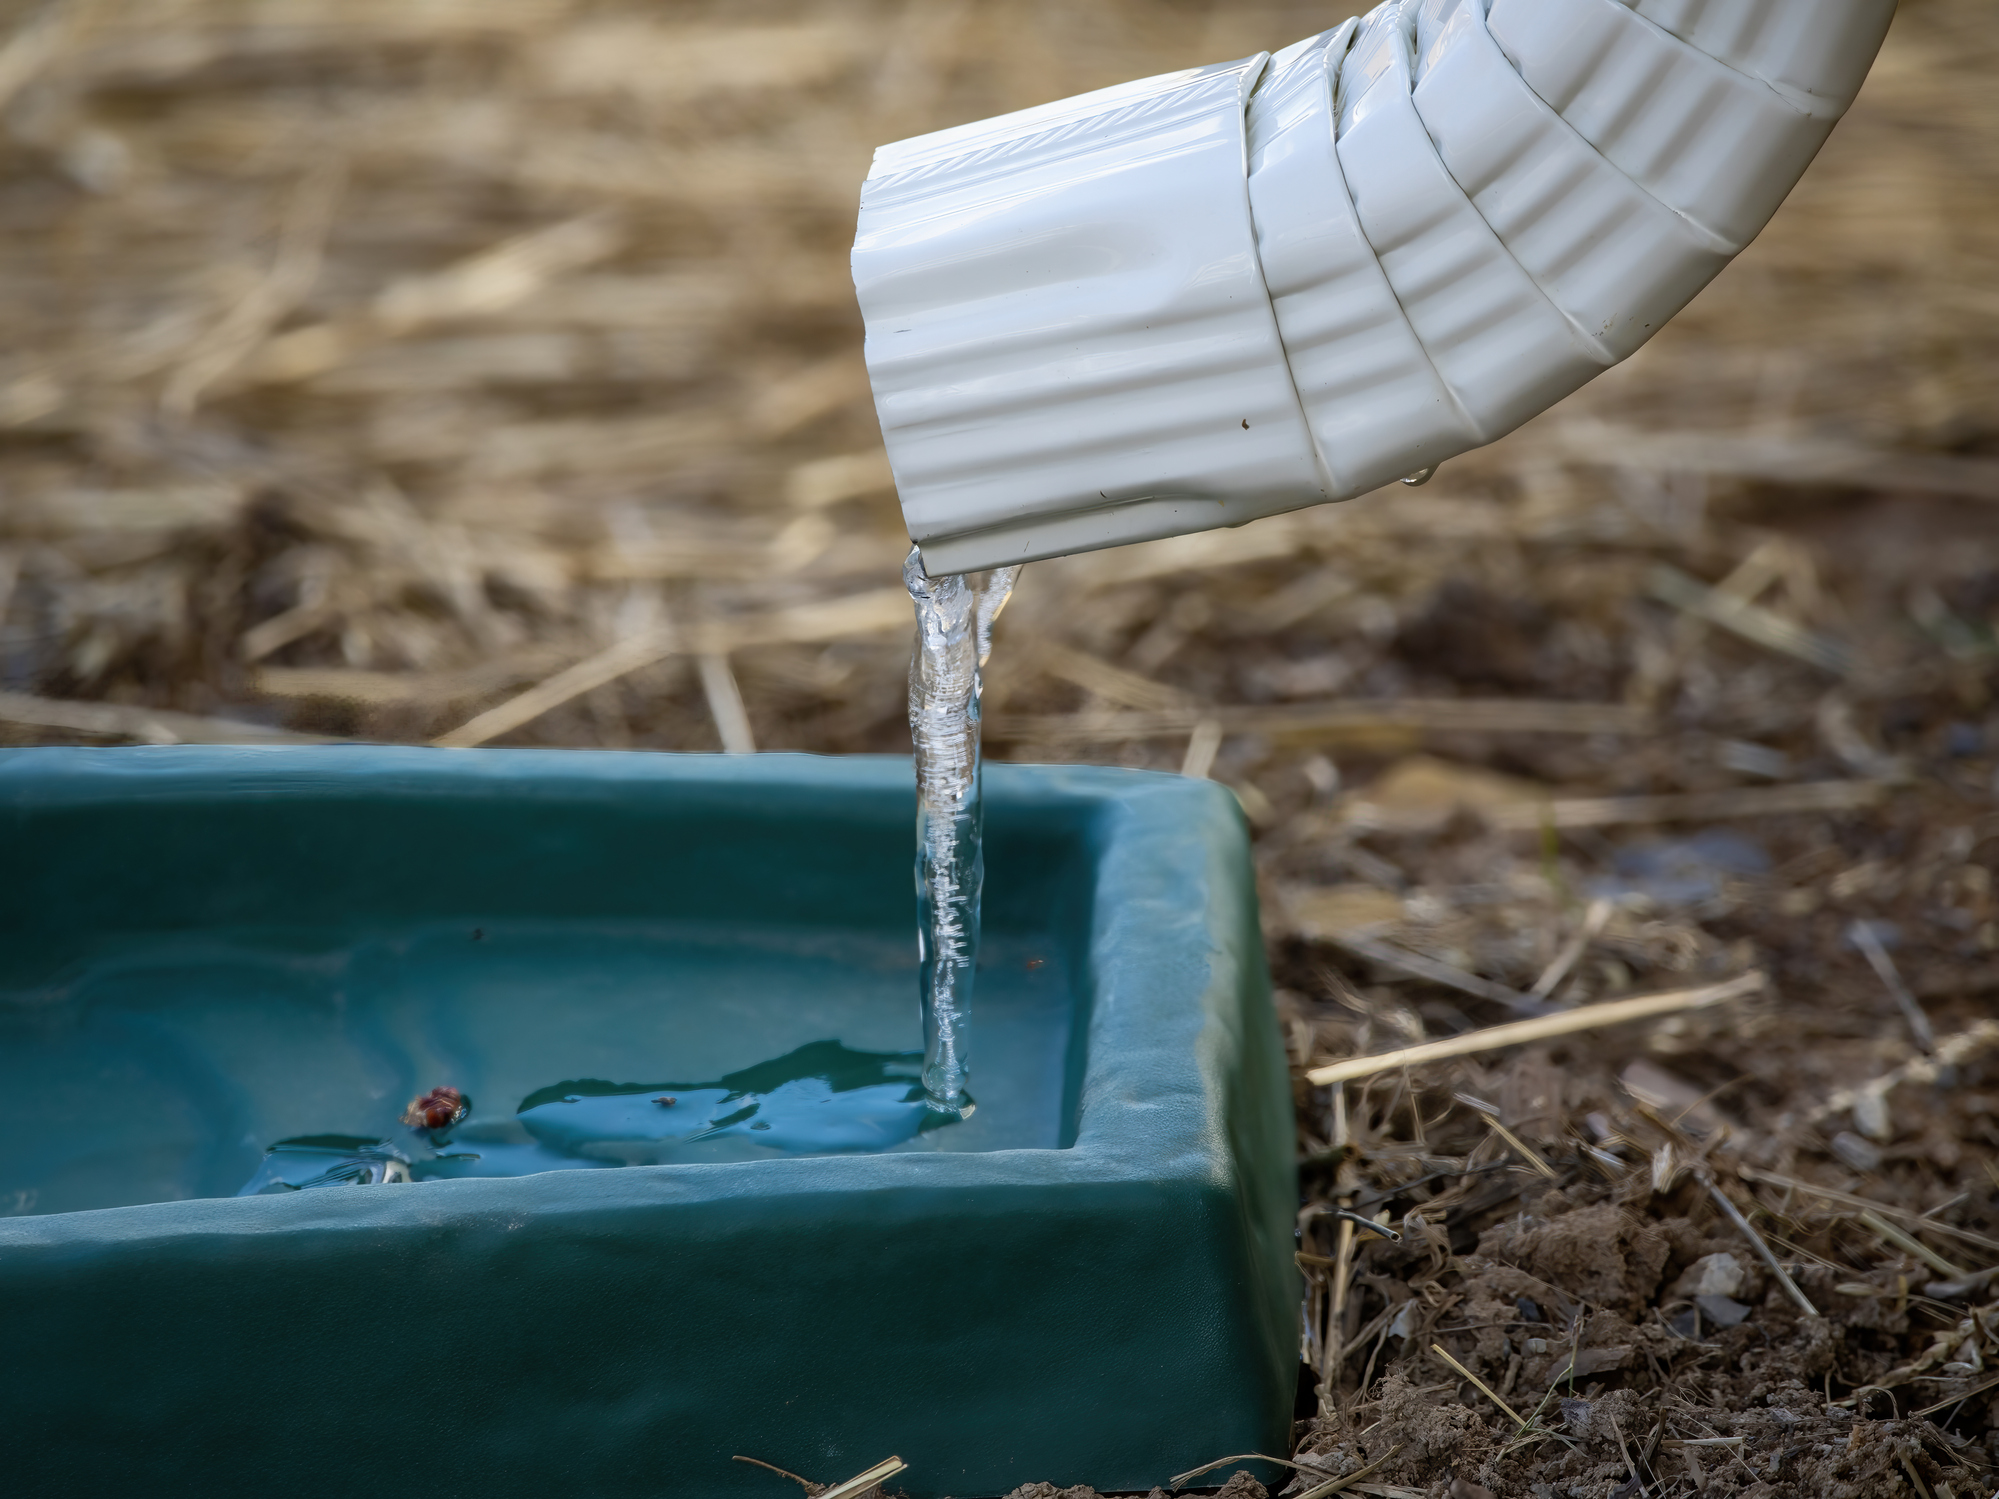 La récupération de l'eau de pluie est une pratique écologique mais réglementée en France. Copyright (c) Ali Majdfar/Istock.